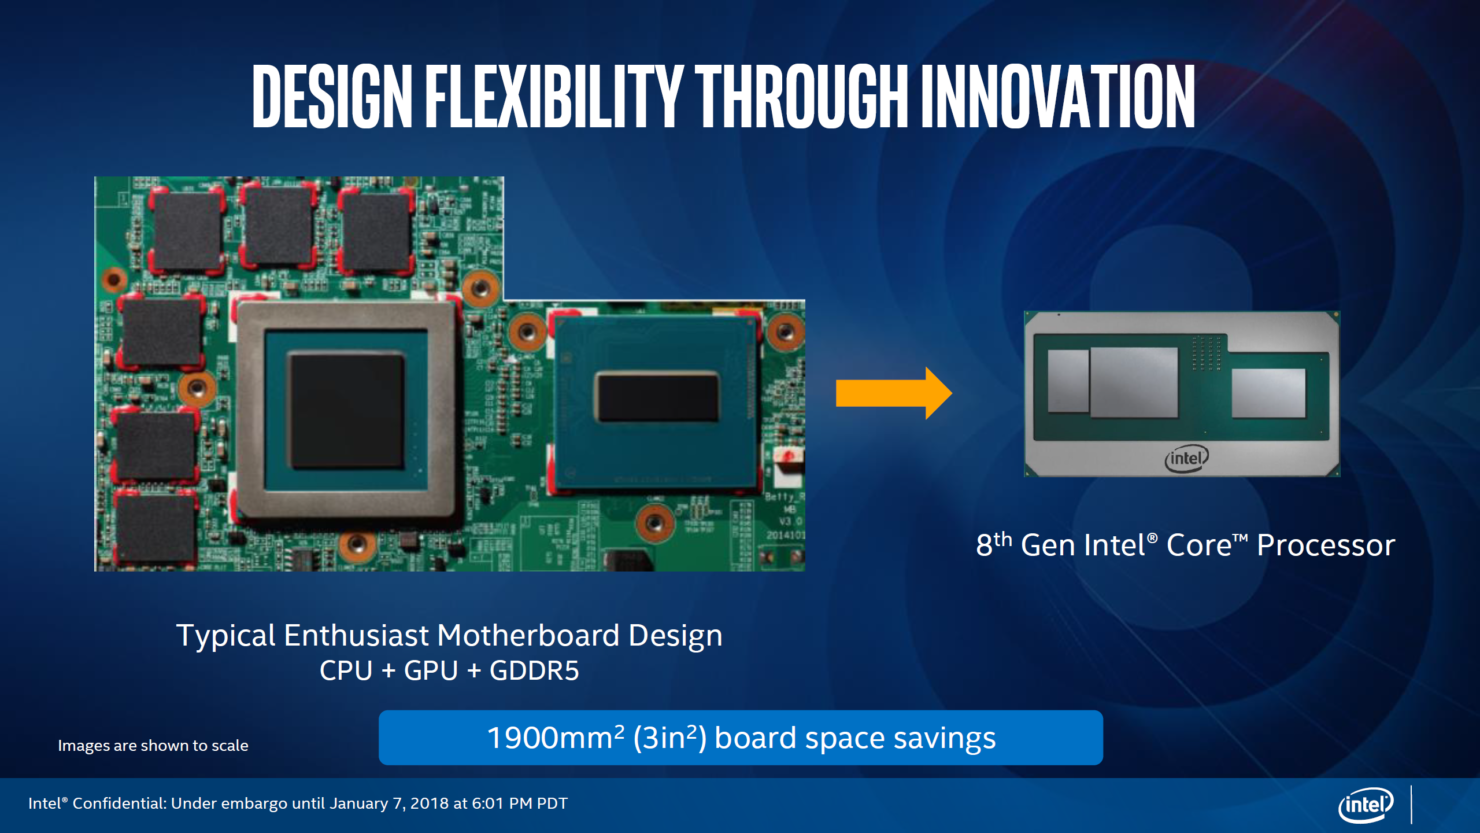 AMD yongalı Intel işlemciler resmiyet kazandı